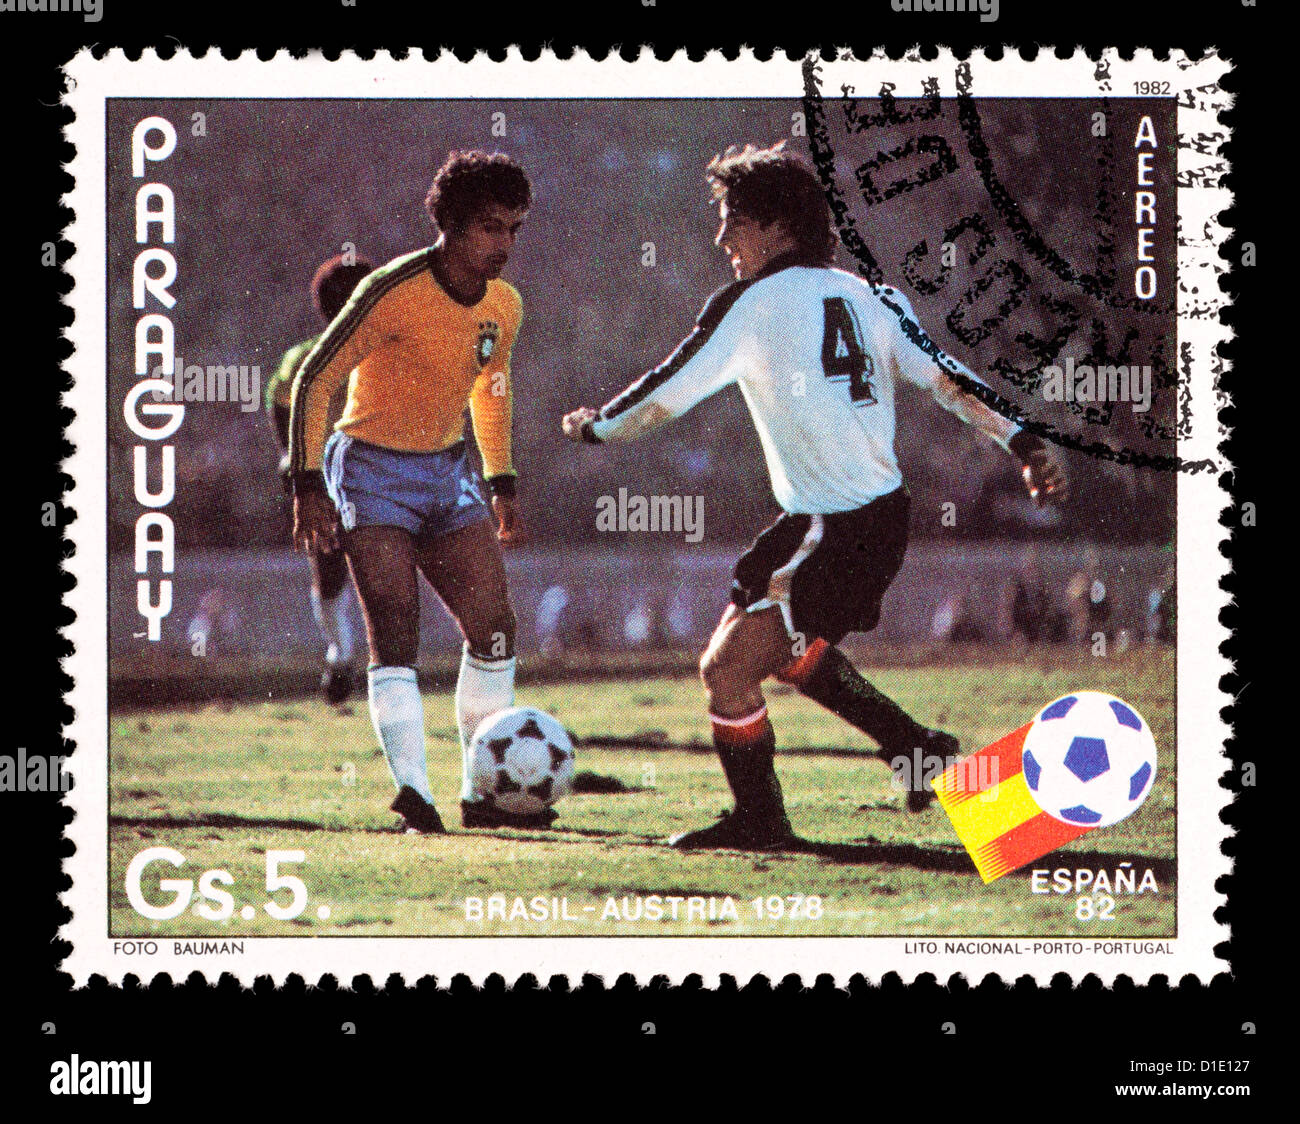 Timbre du Paraguay représentant des joueurs de football, émis pour la Coupe du Monde de football 1982 en Espagne. Banque D'Images